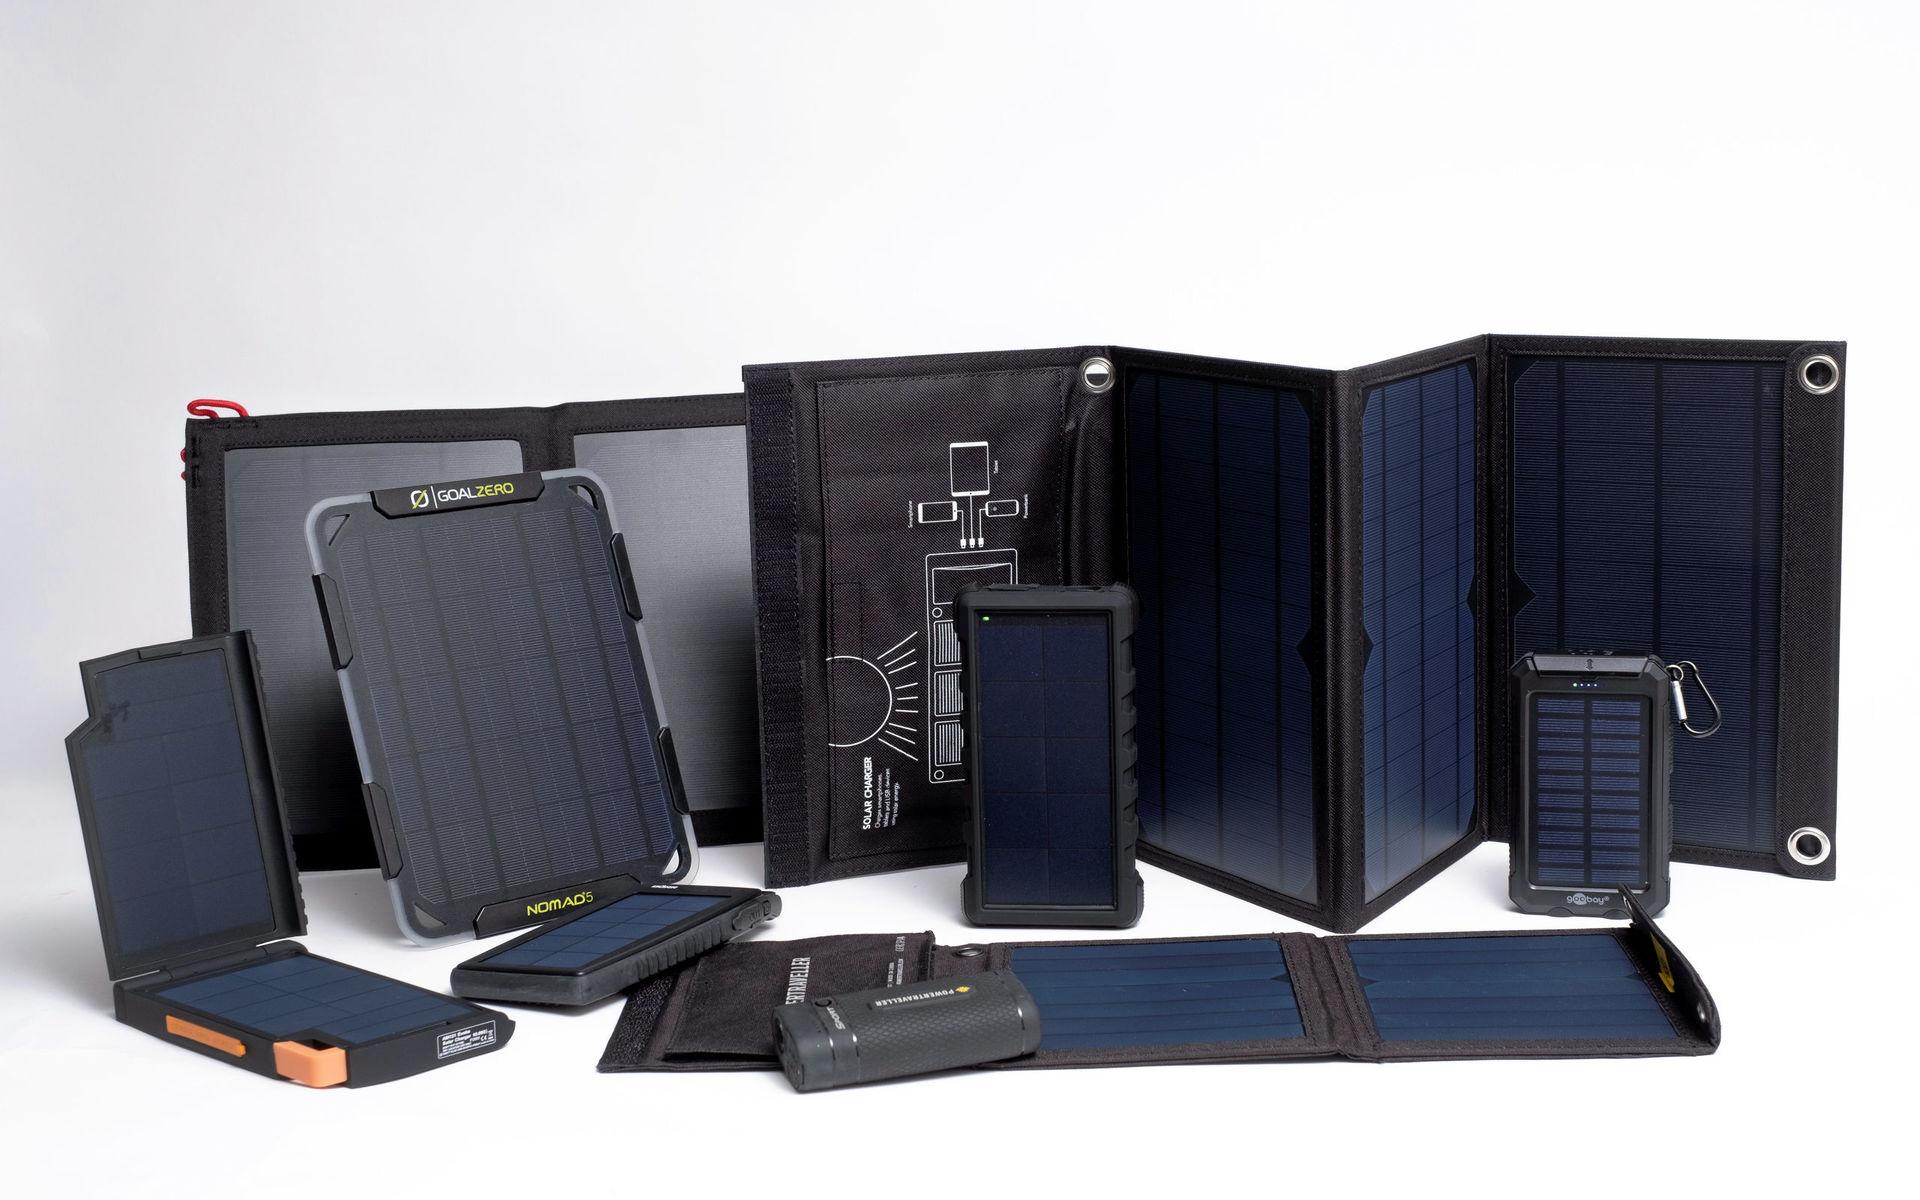 Testfakta har testat åtta portabla solcellspaneler avsedda för friluftsliv som säljs på den svenska marknaden.